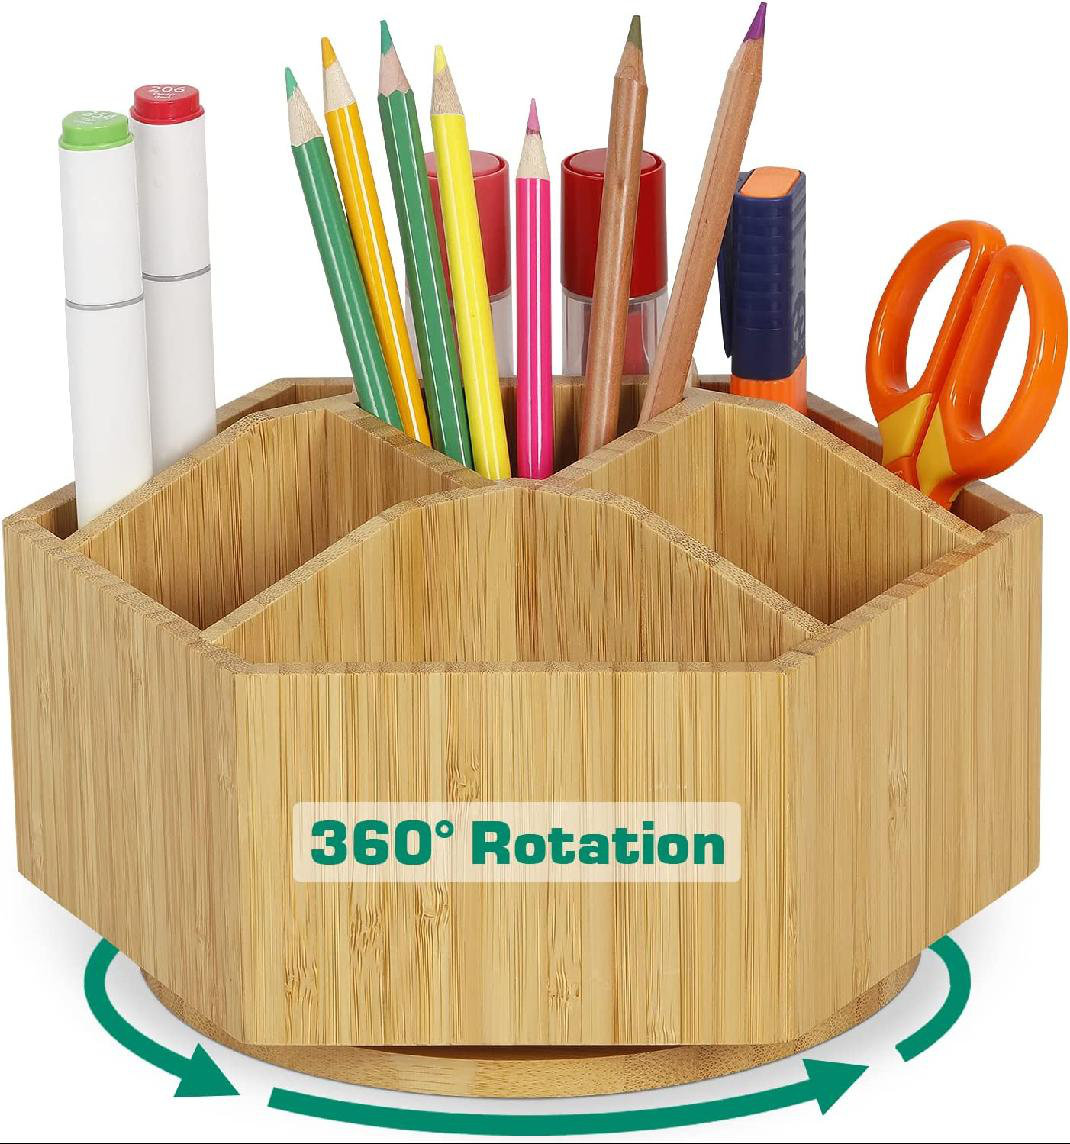 Crayon and Color Pencil Classroom Storage Organization